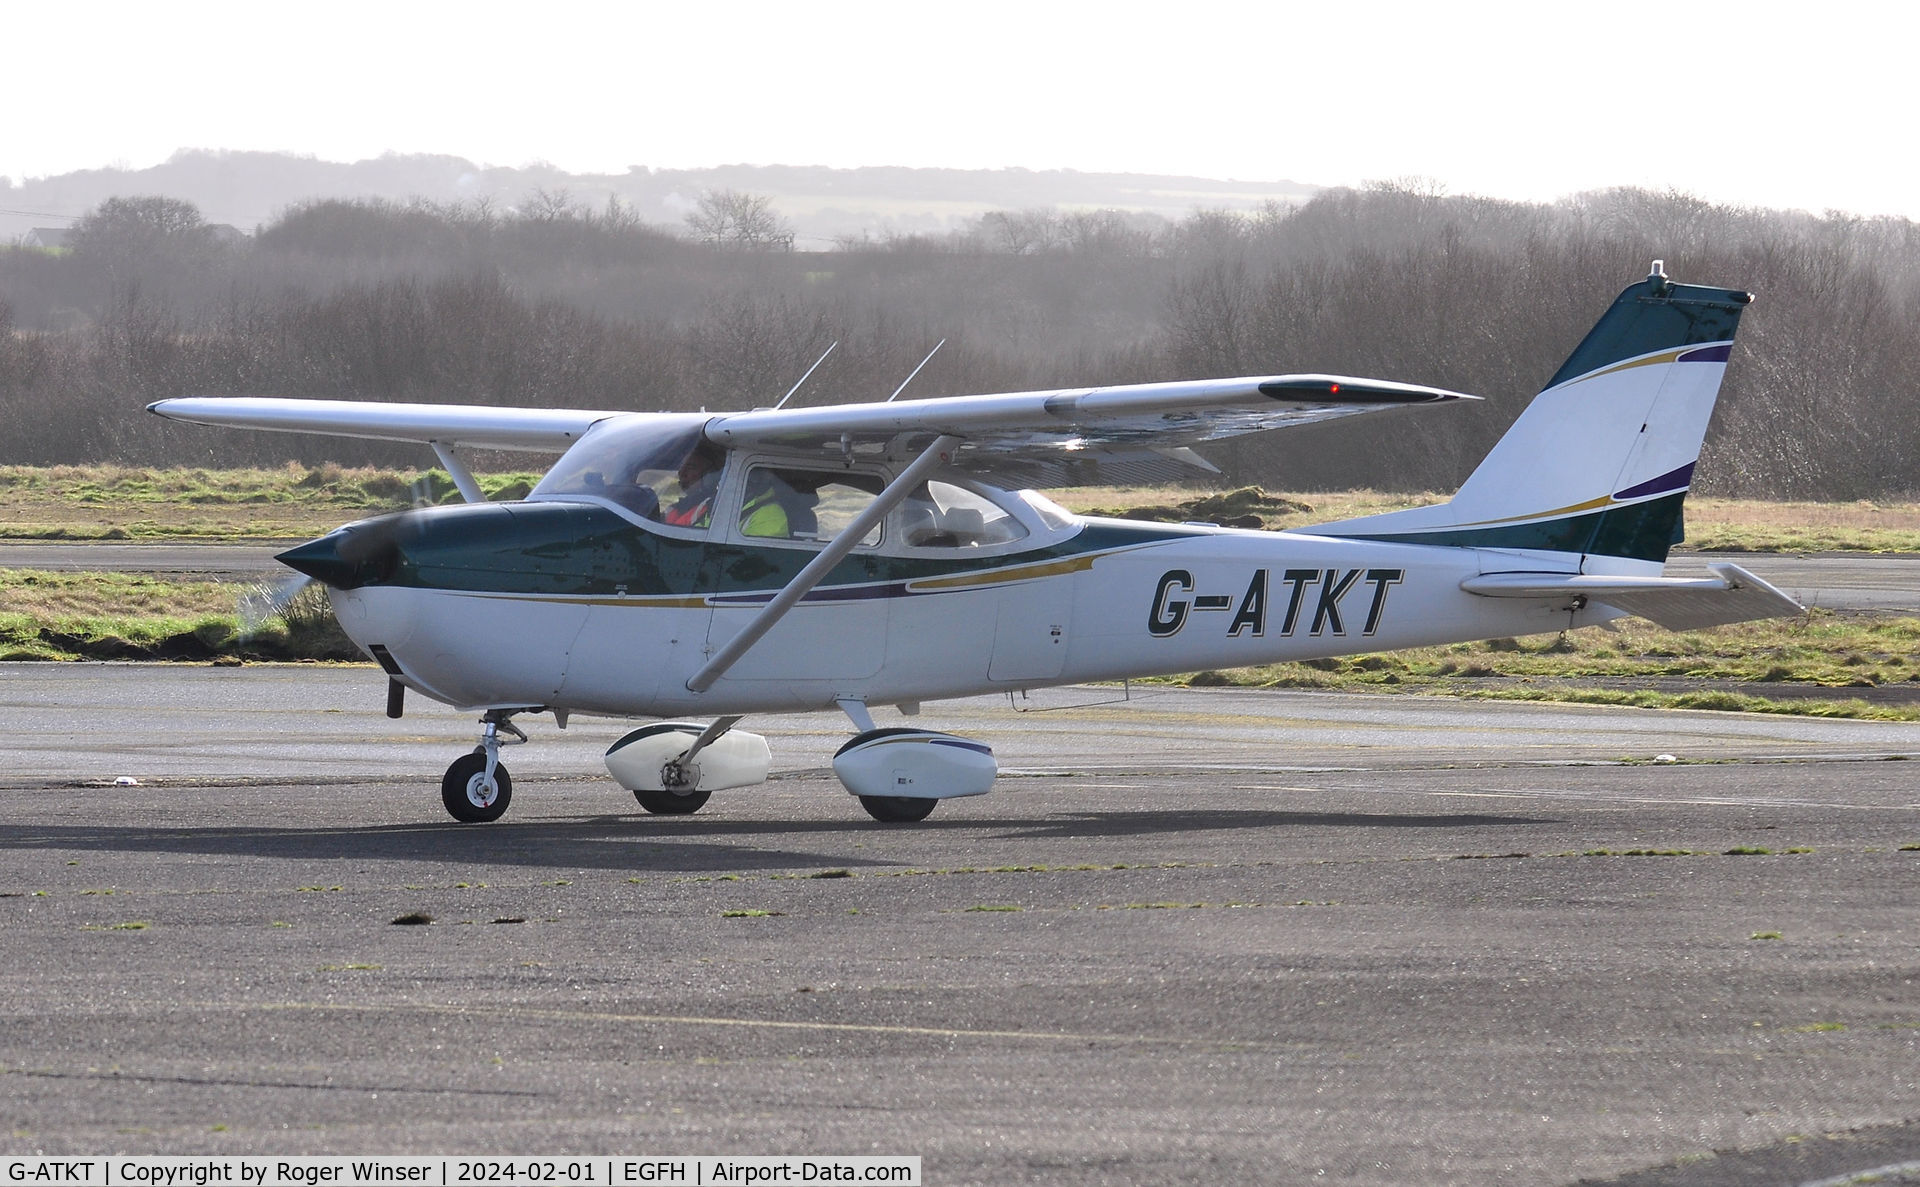 G-ATKT, 1965 Reims F172G Skyhawk C/N 0206, Resident Skyhawk.